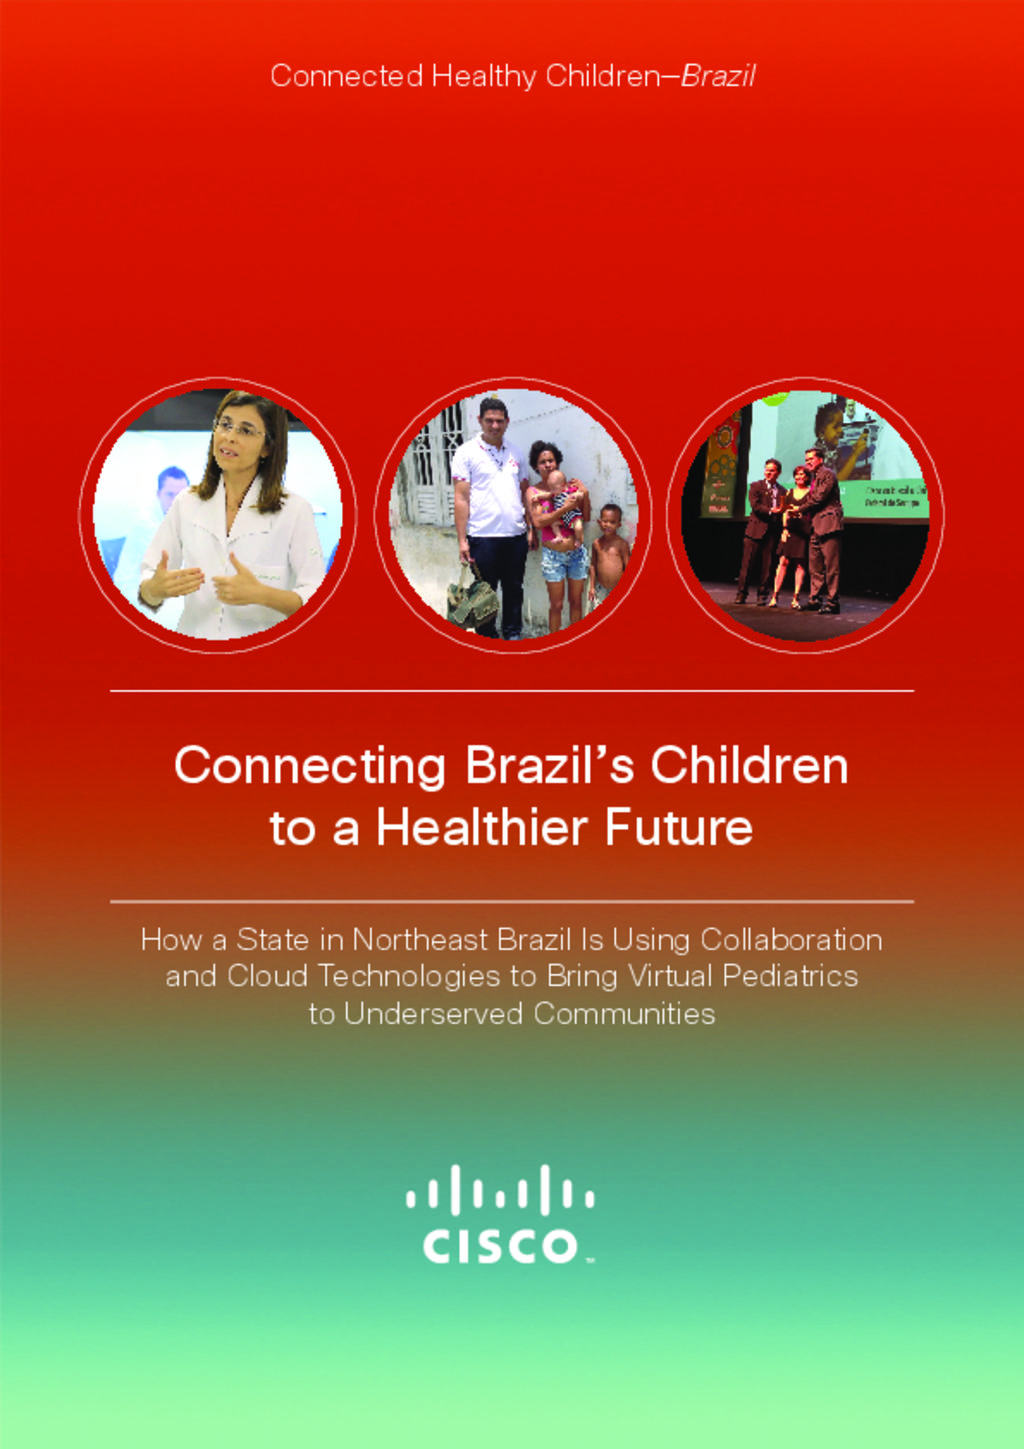 A brighter future for Children in Brazil